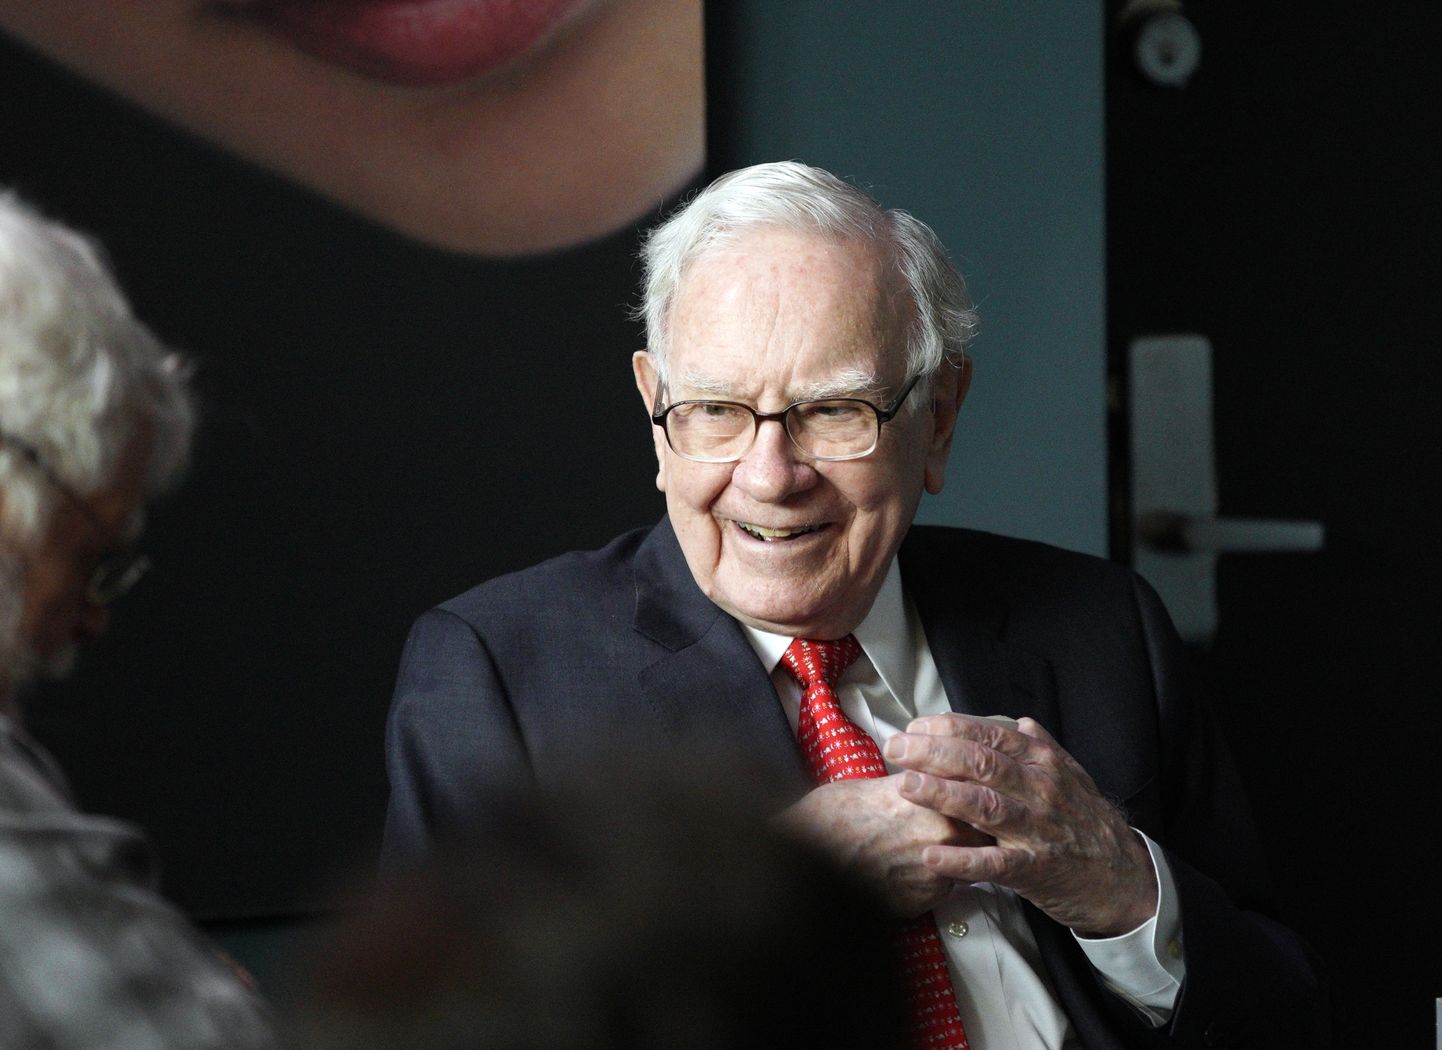 Investeerimisguru Warren Buffettit peetakse paremaks teistel põhjustel kui aktsiate valimine.